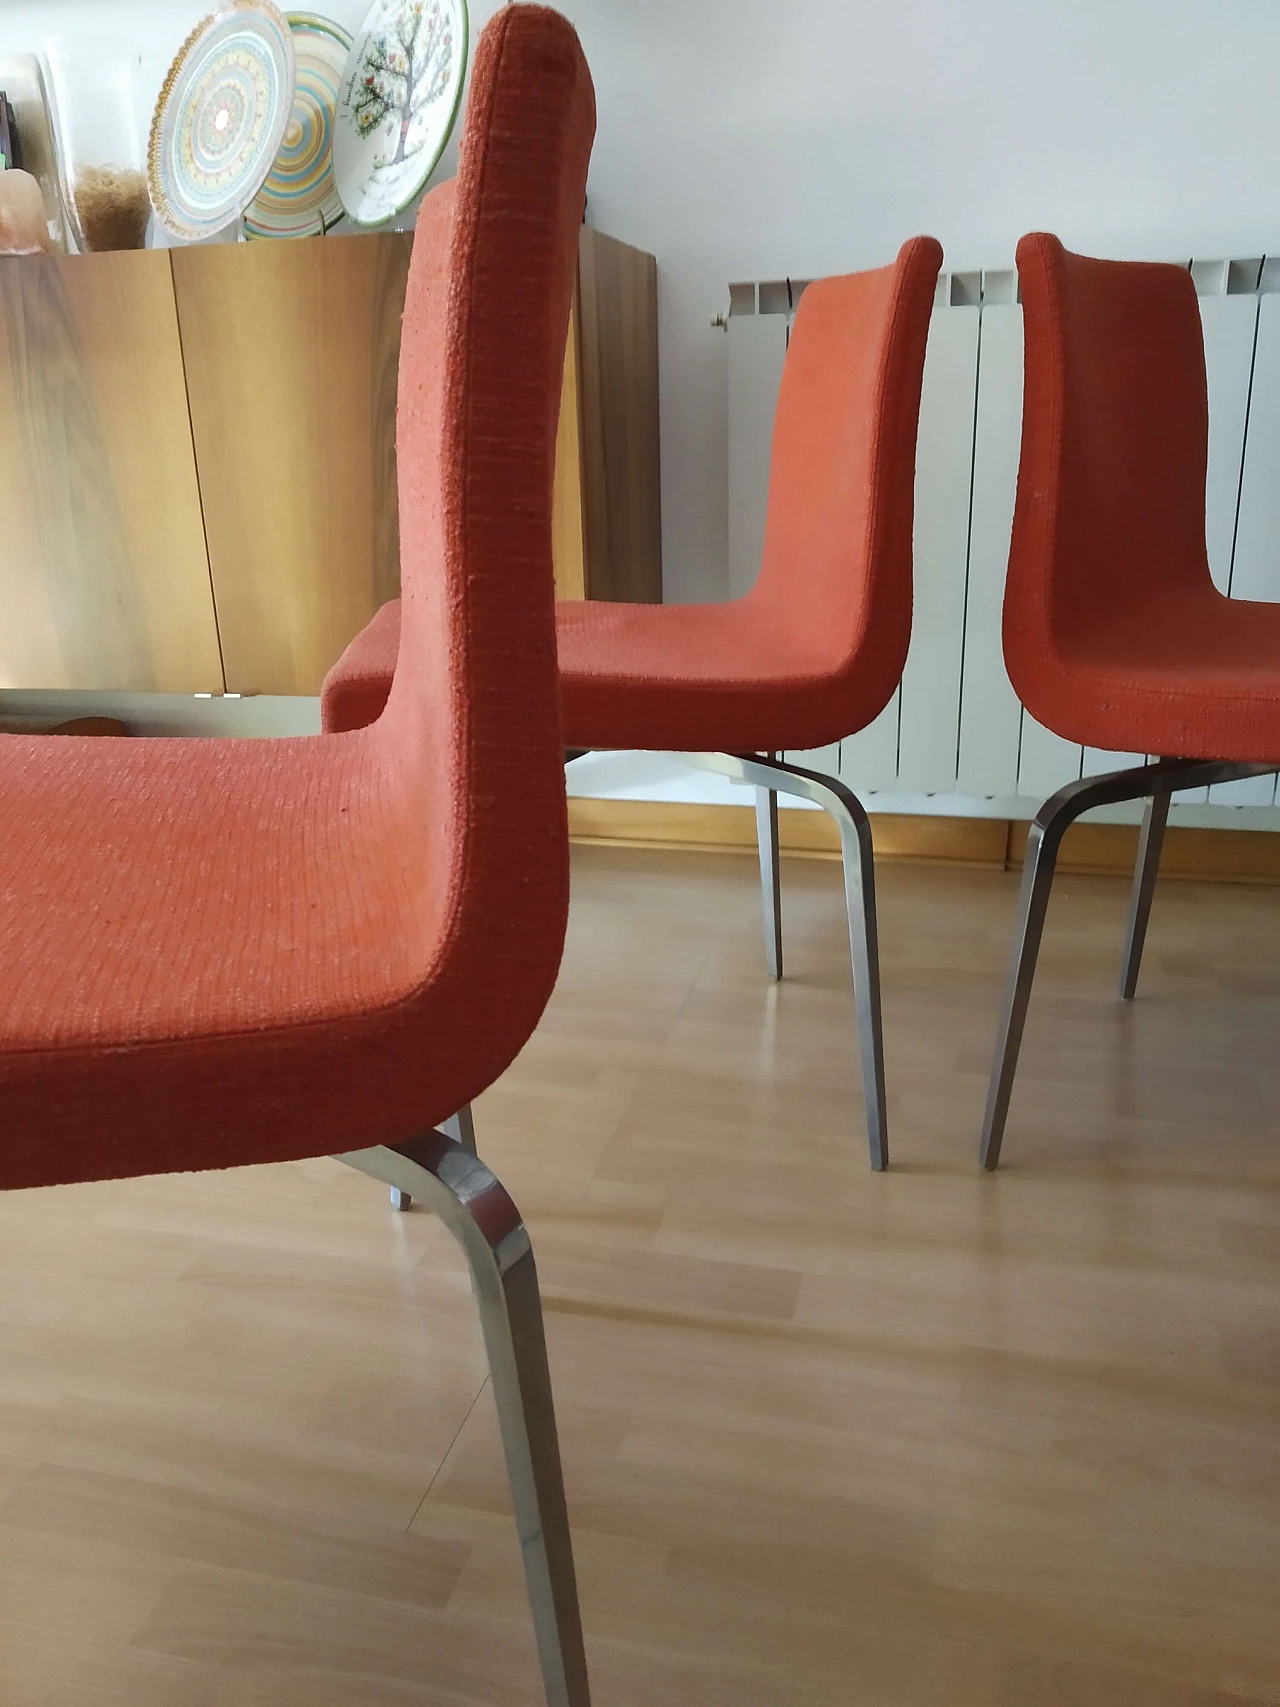 4 Hella Chairs by Mauro Lipparini for MisuraEmme 1477221